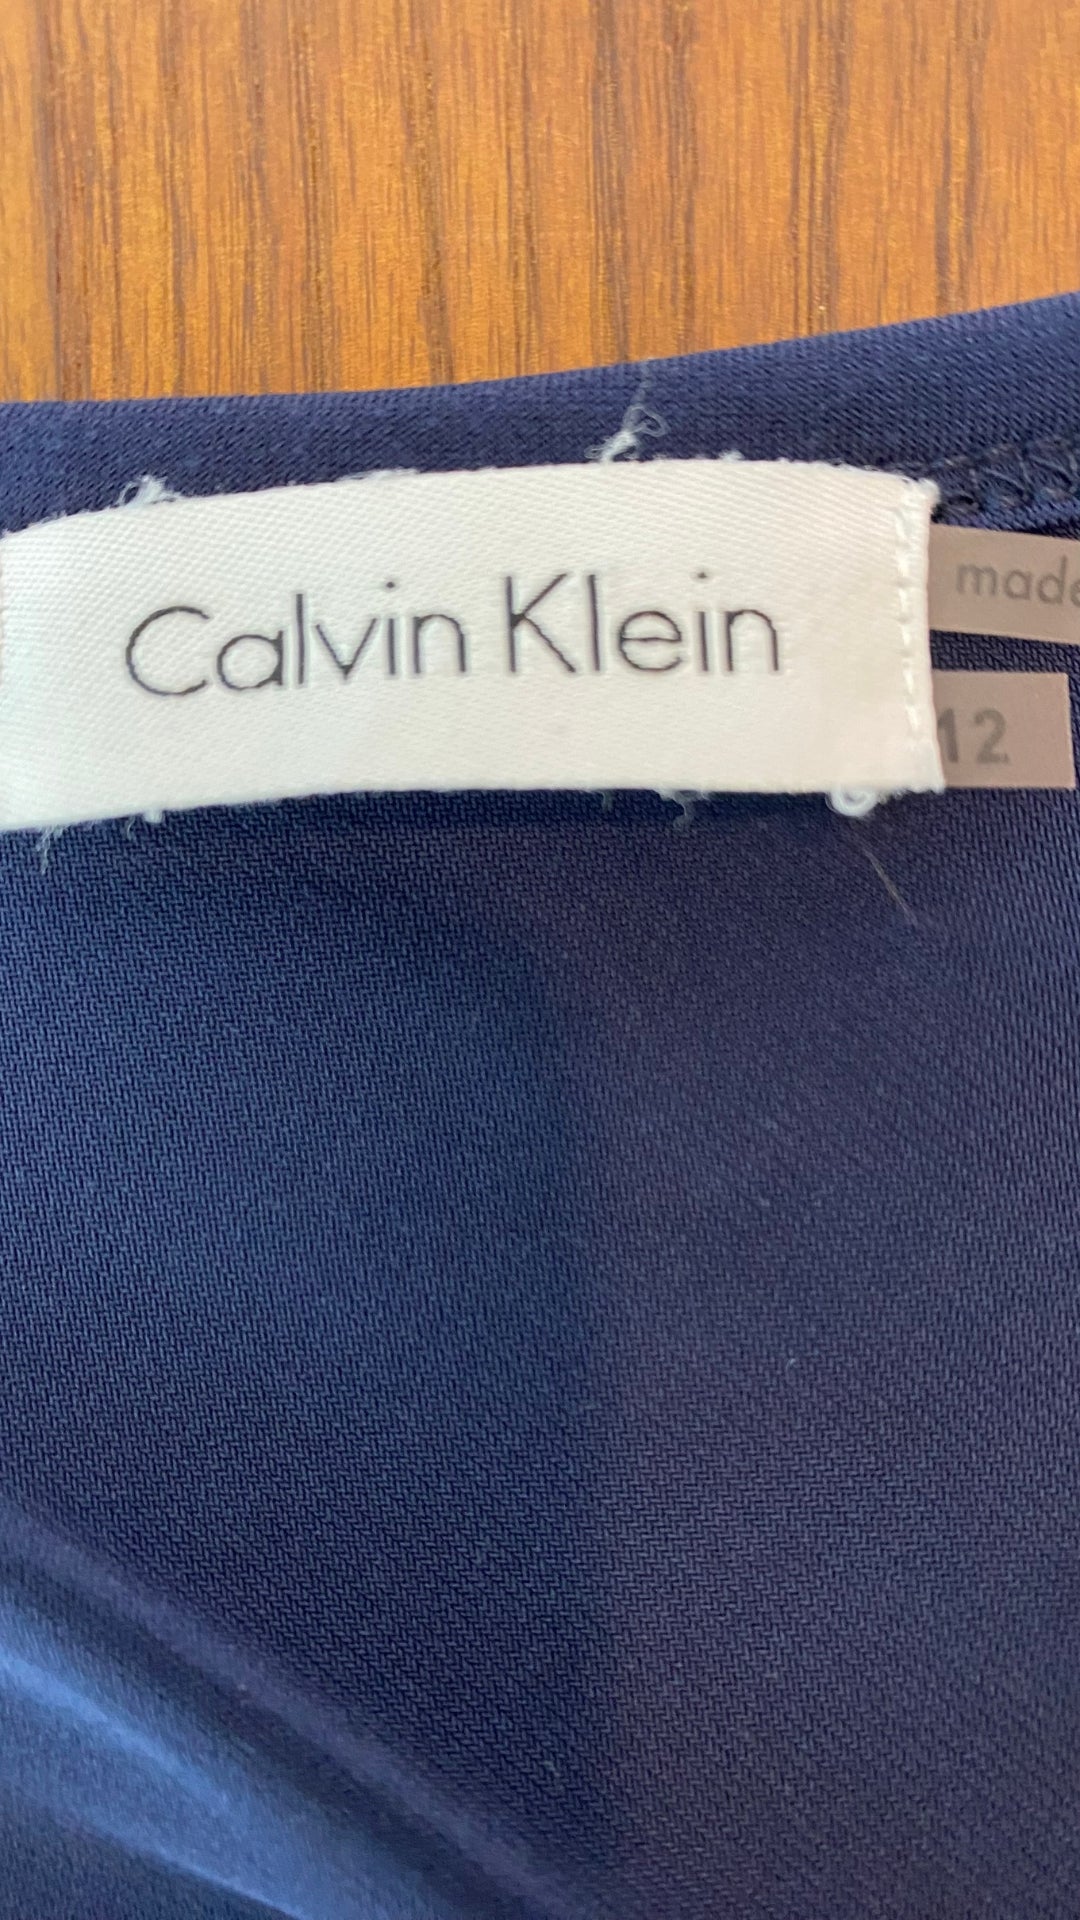 Robe marine au plissé magnifique Calvin Klein, taille 12 (plus 8-10). Vue de l'étiquette de marque et taille.